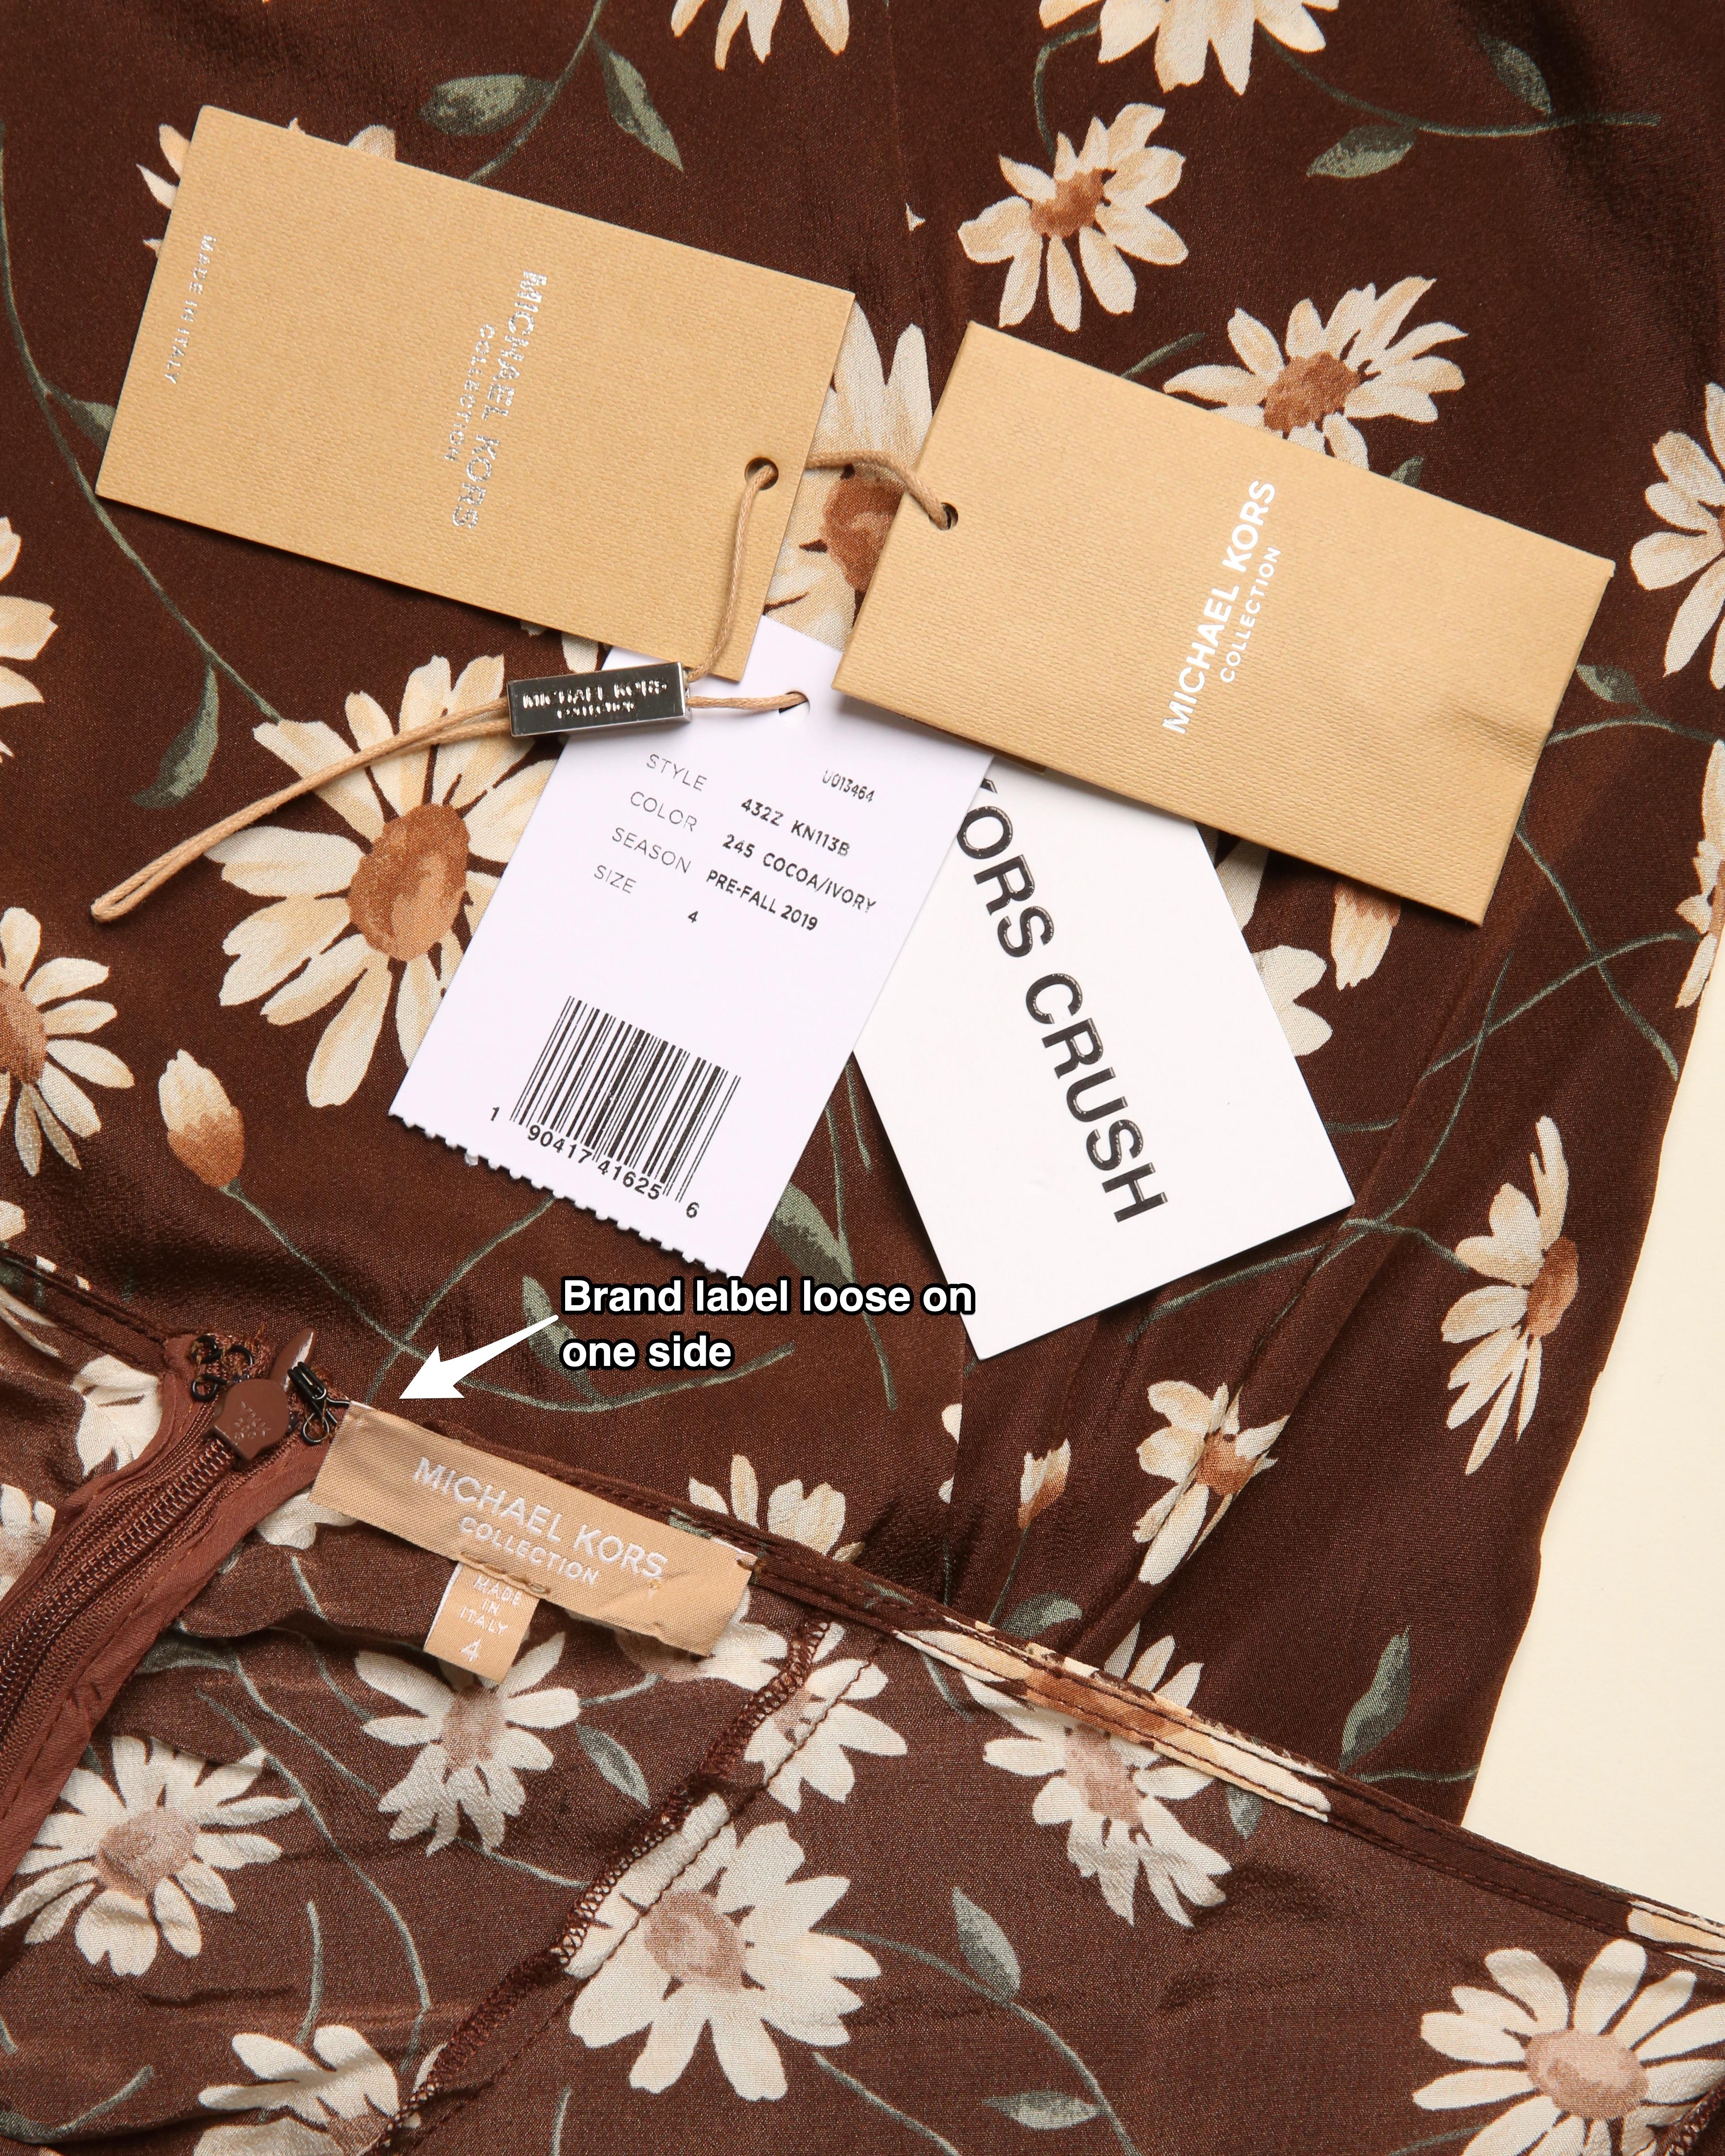 Michael Kors - Robe midi en soie marron et blanche à volants avec imprimé floral et marron marron, style thé, taille US 4 11